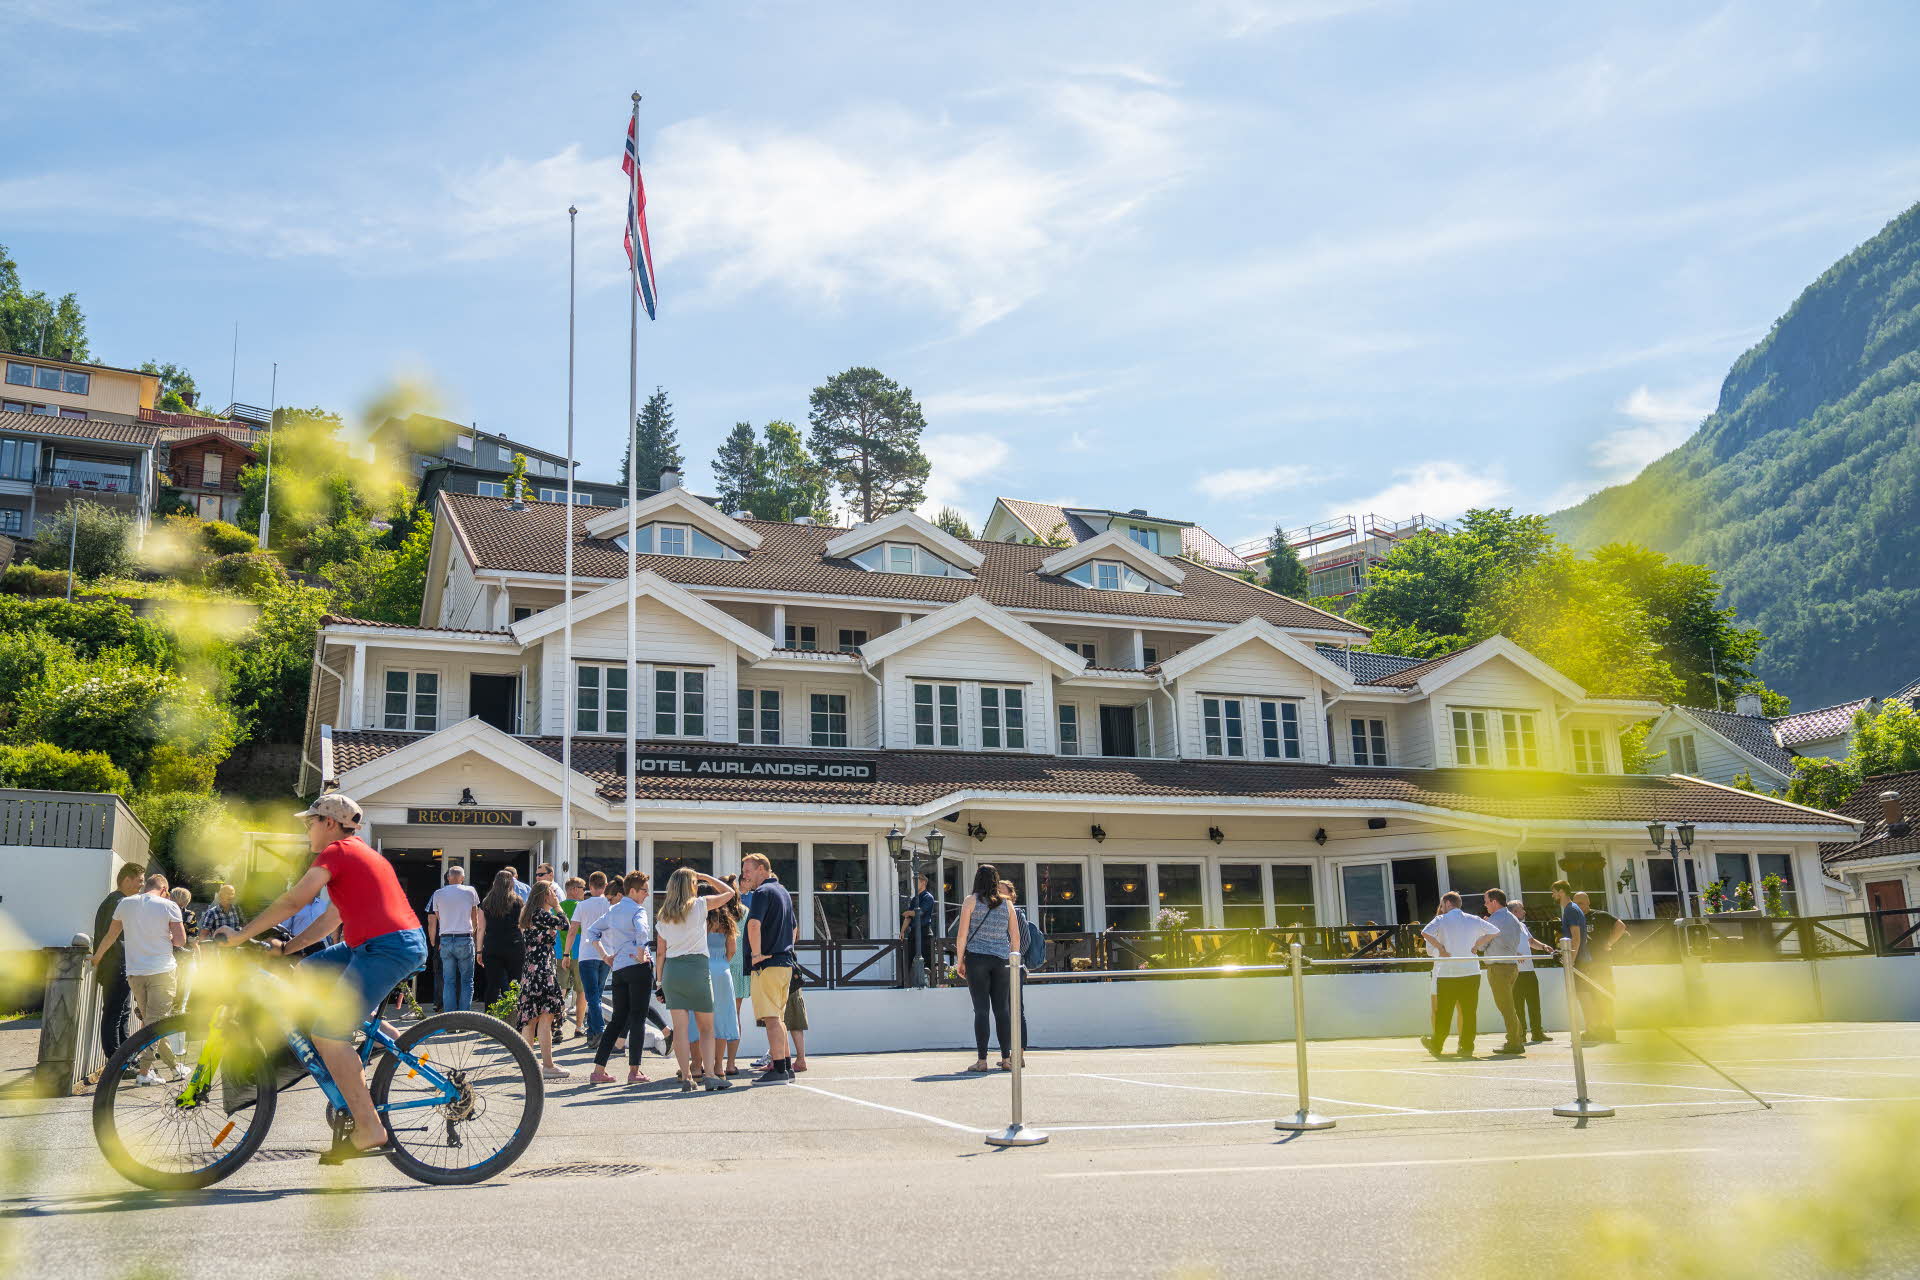 En été, la terrasse extérieure en bois de l’hôtel Aurlandsfjord avec des personnes regroupées devant l’hôtel et un garçon à vélo vêtu d’un T-shirt rouge